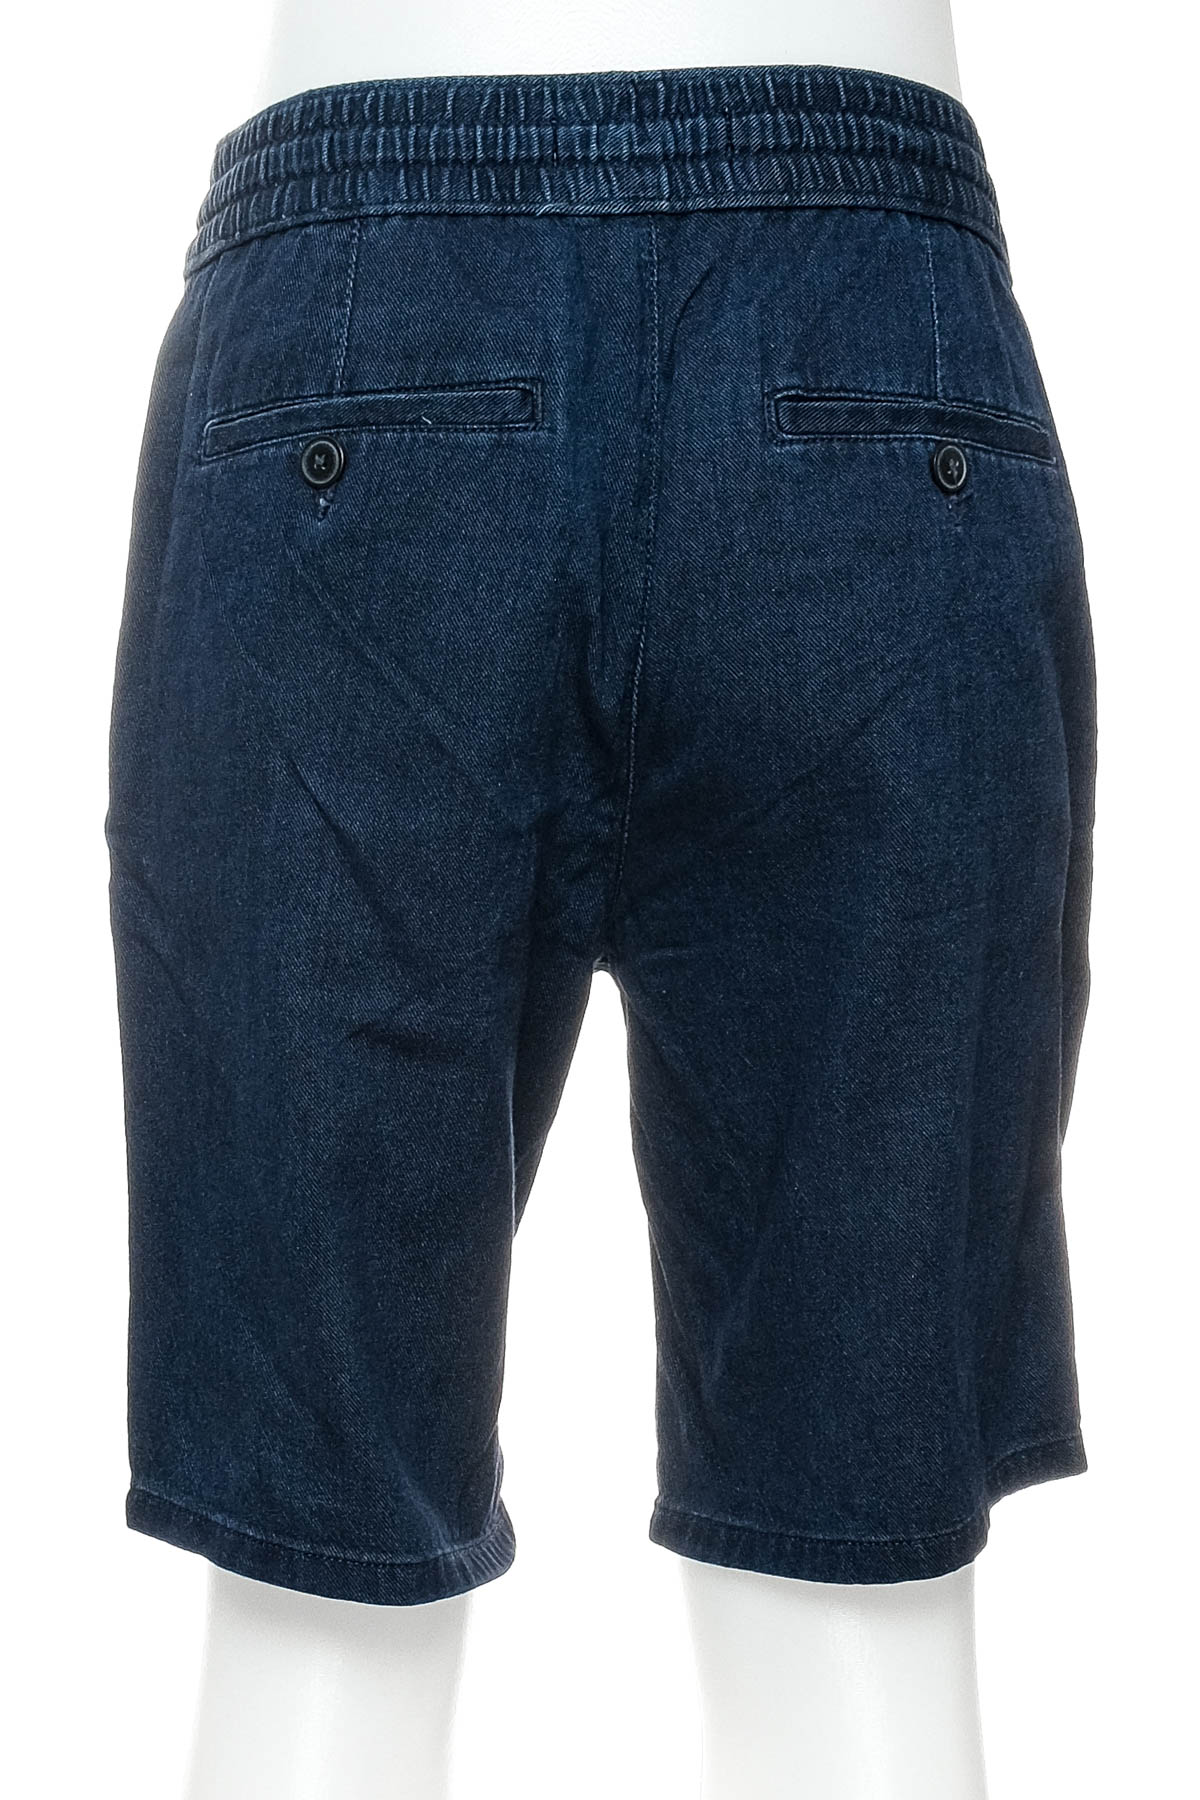 Pantaloni scurți bărbați - H&M - 1